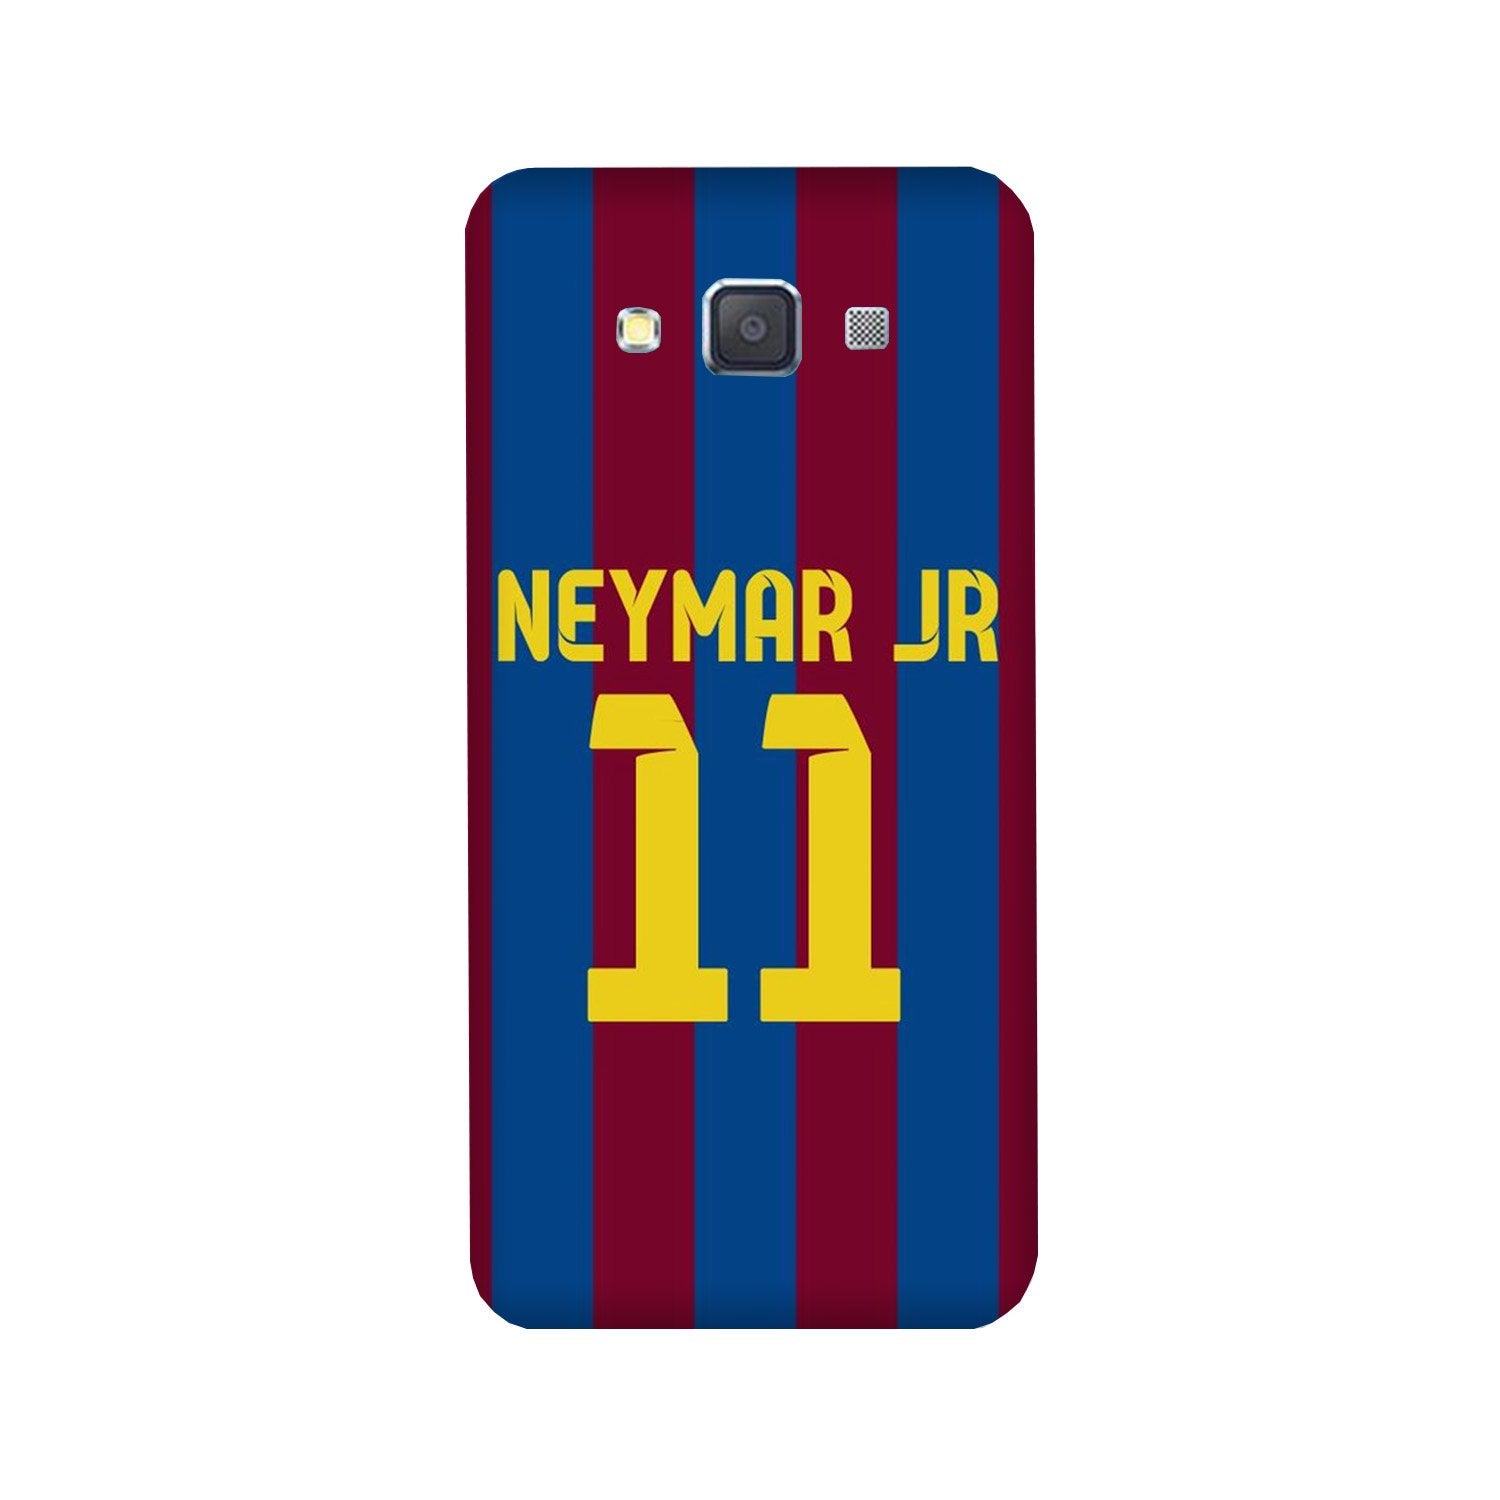 Neymar Jr Case for Galaxy A5 (2015)  (Design - 162)